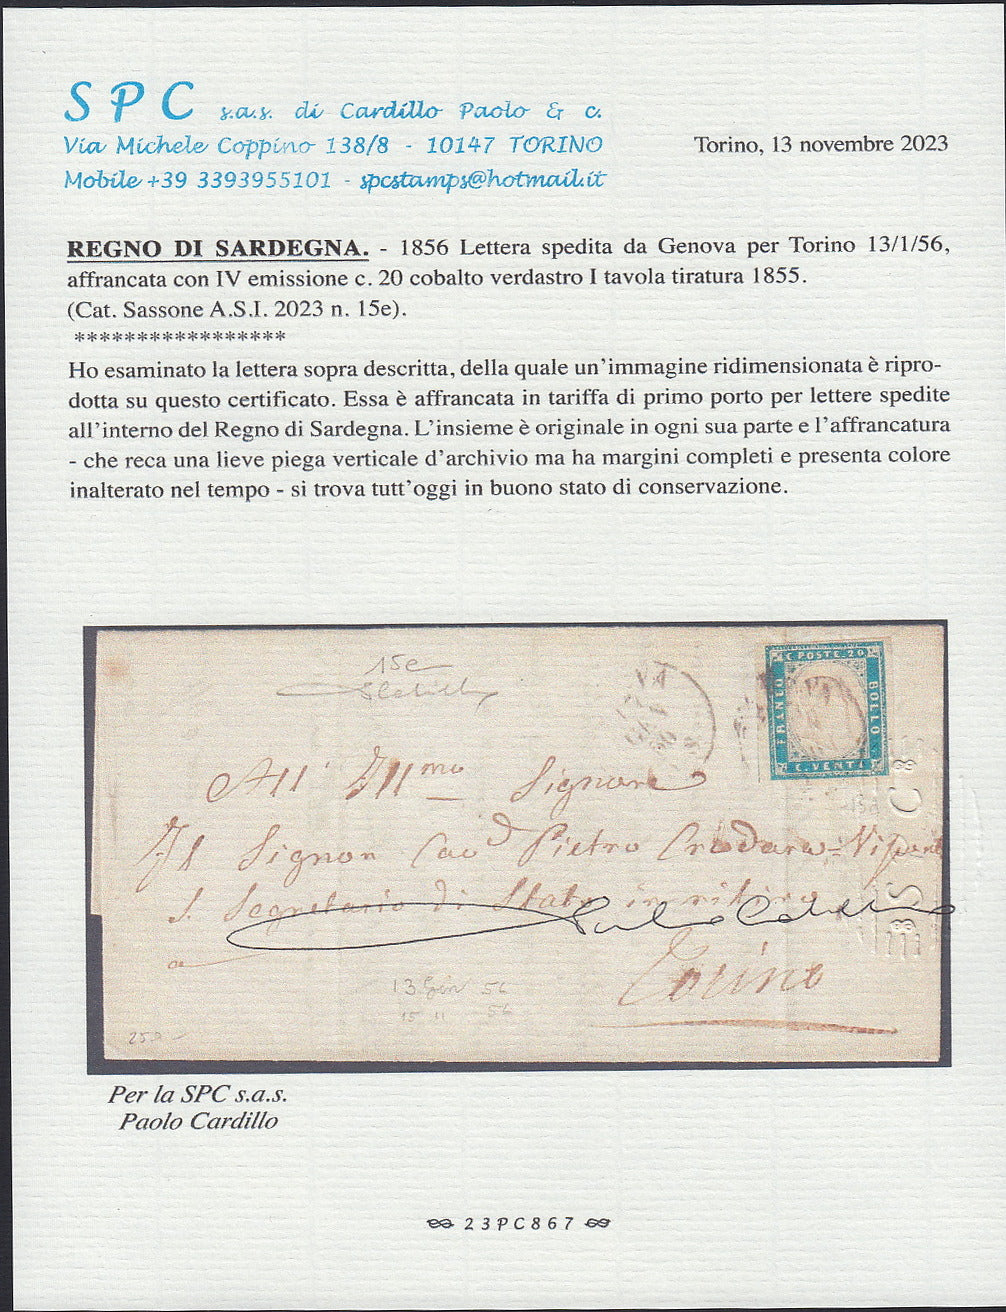 231 - 1856 - IV emissione, lettera spedita da Genova per Torino 17/1/56 affrancata con c. 20 cobalto verdastro I tavola (15e).